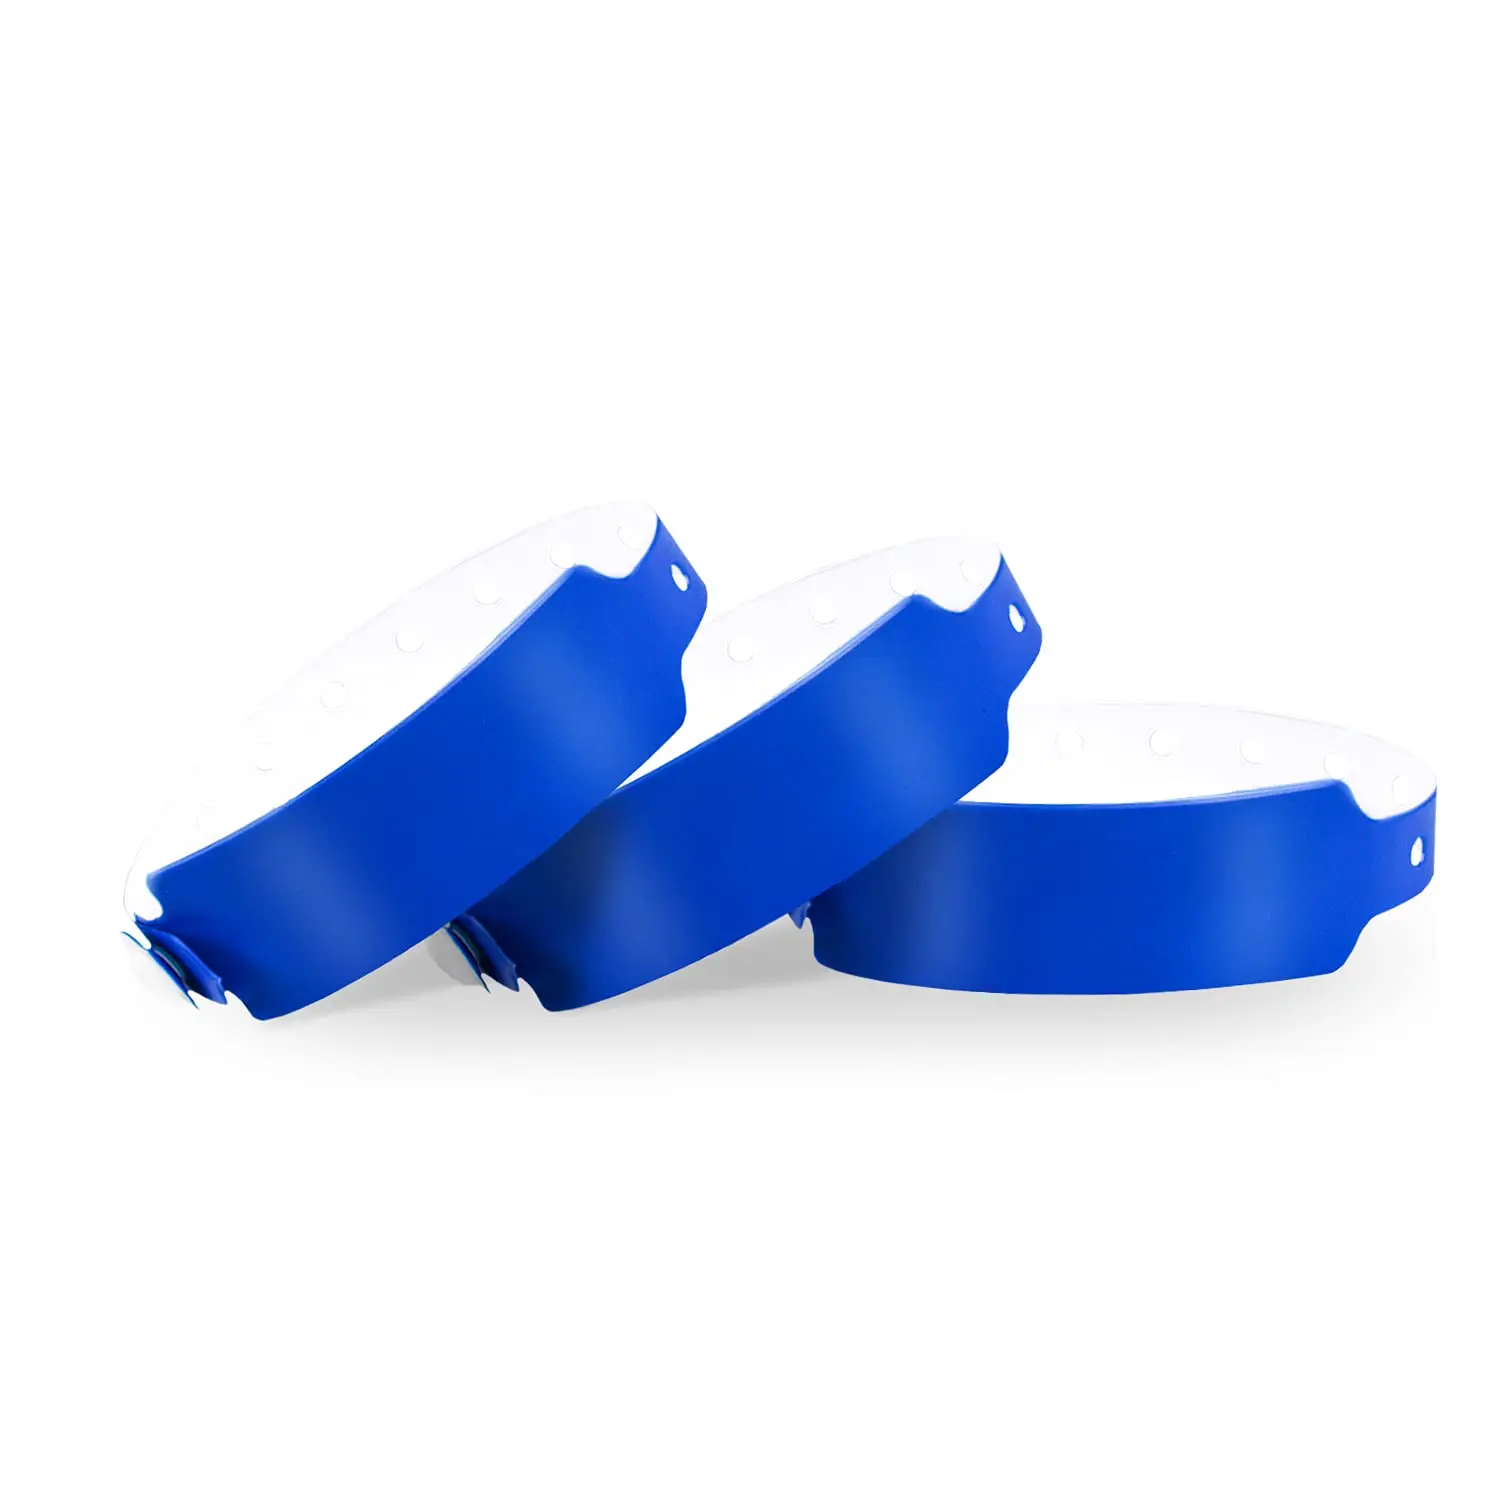 pulseras de plastico para eventos - Qué significan las pulseras de plástico